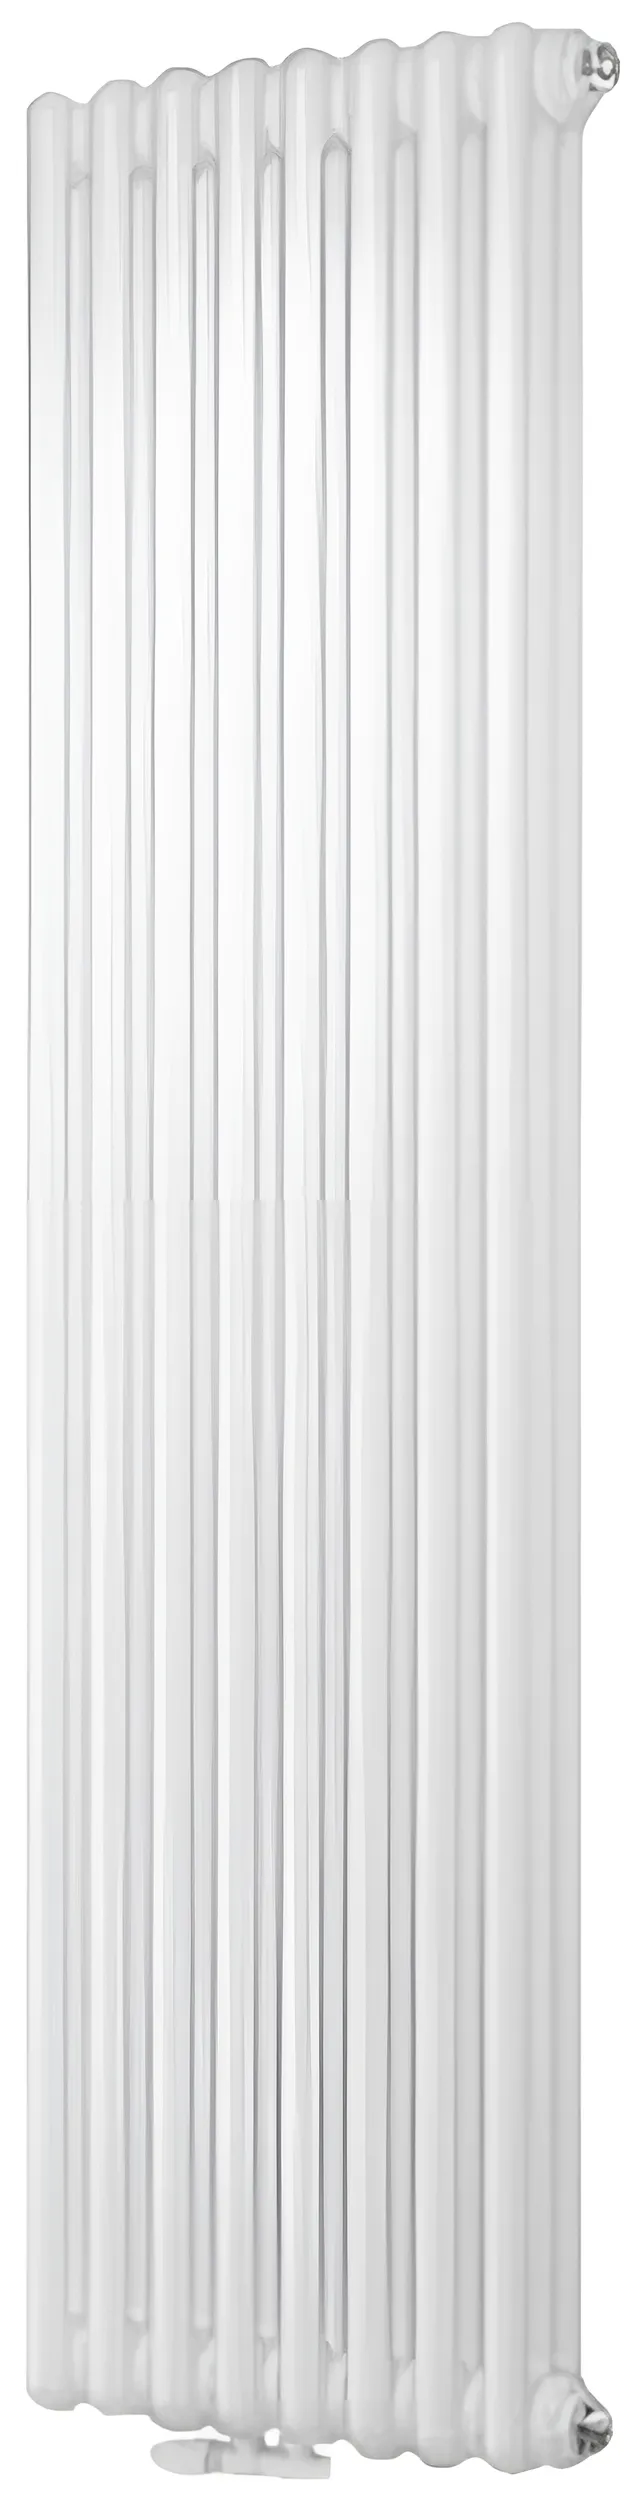 Дизайн-радиатор Cordivari Ardesia 3 колонны 8 секций H1800 мм AS6 COLOR T01 в интернет-магазине, главное фото